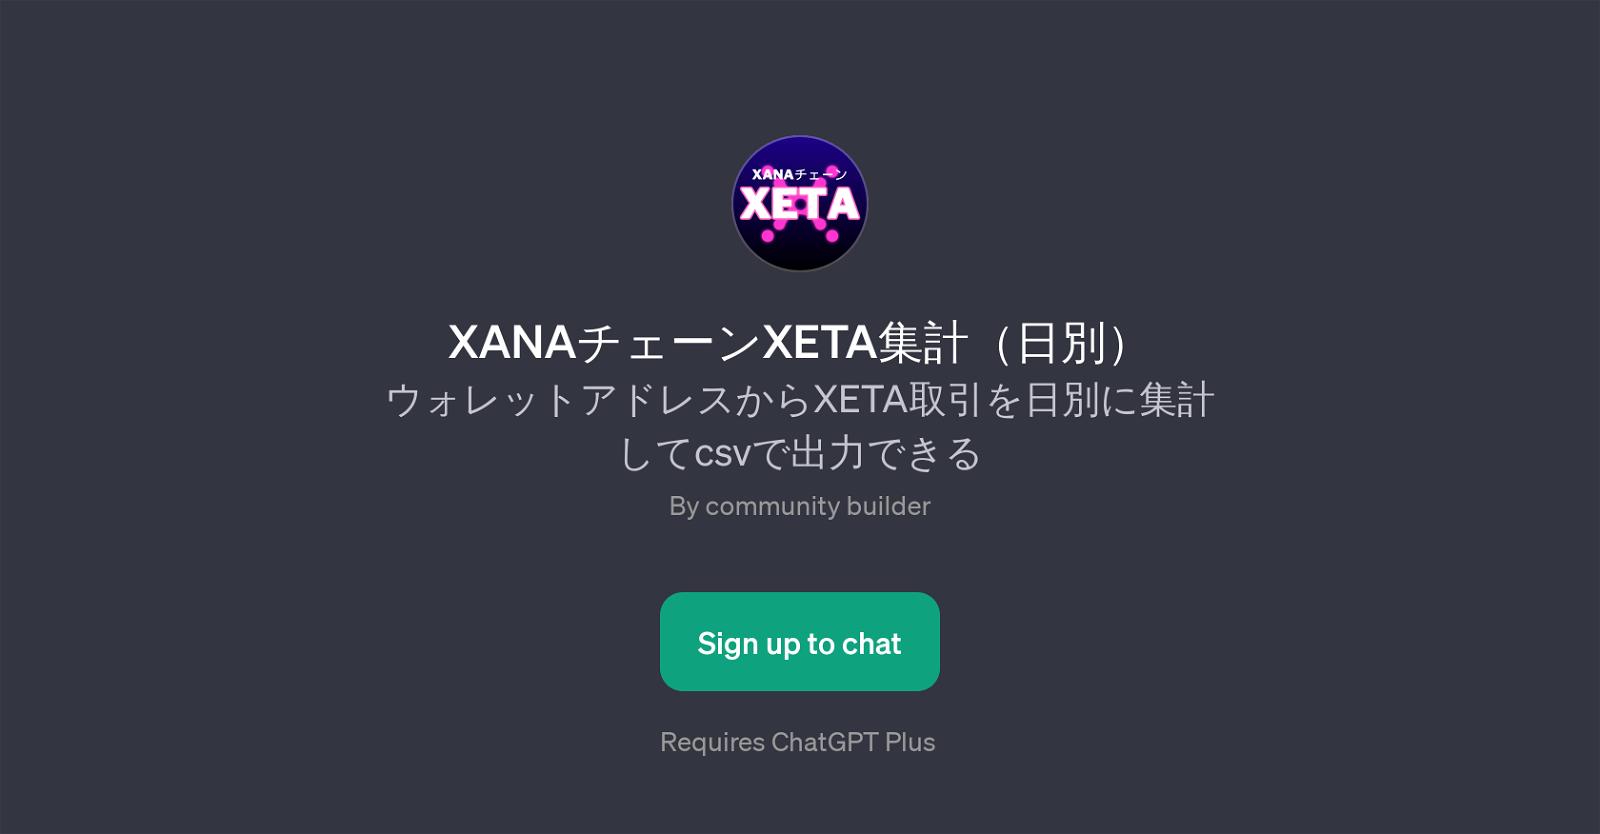 XANA Chain XETA daily tally website